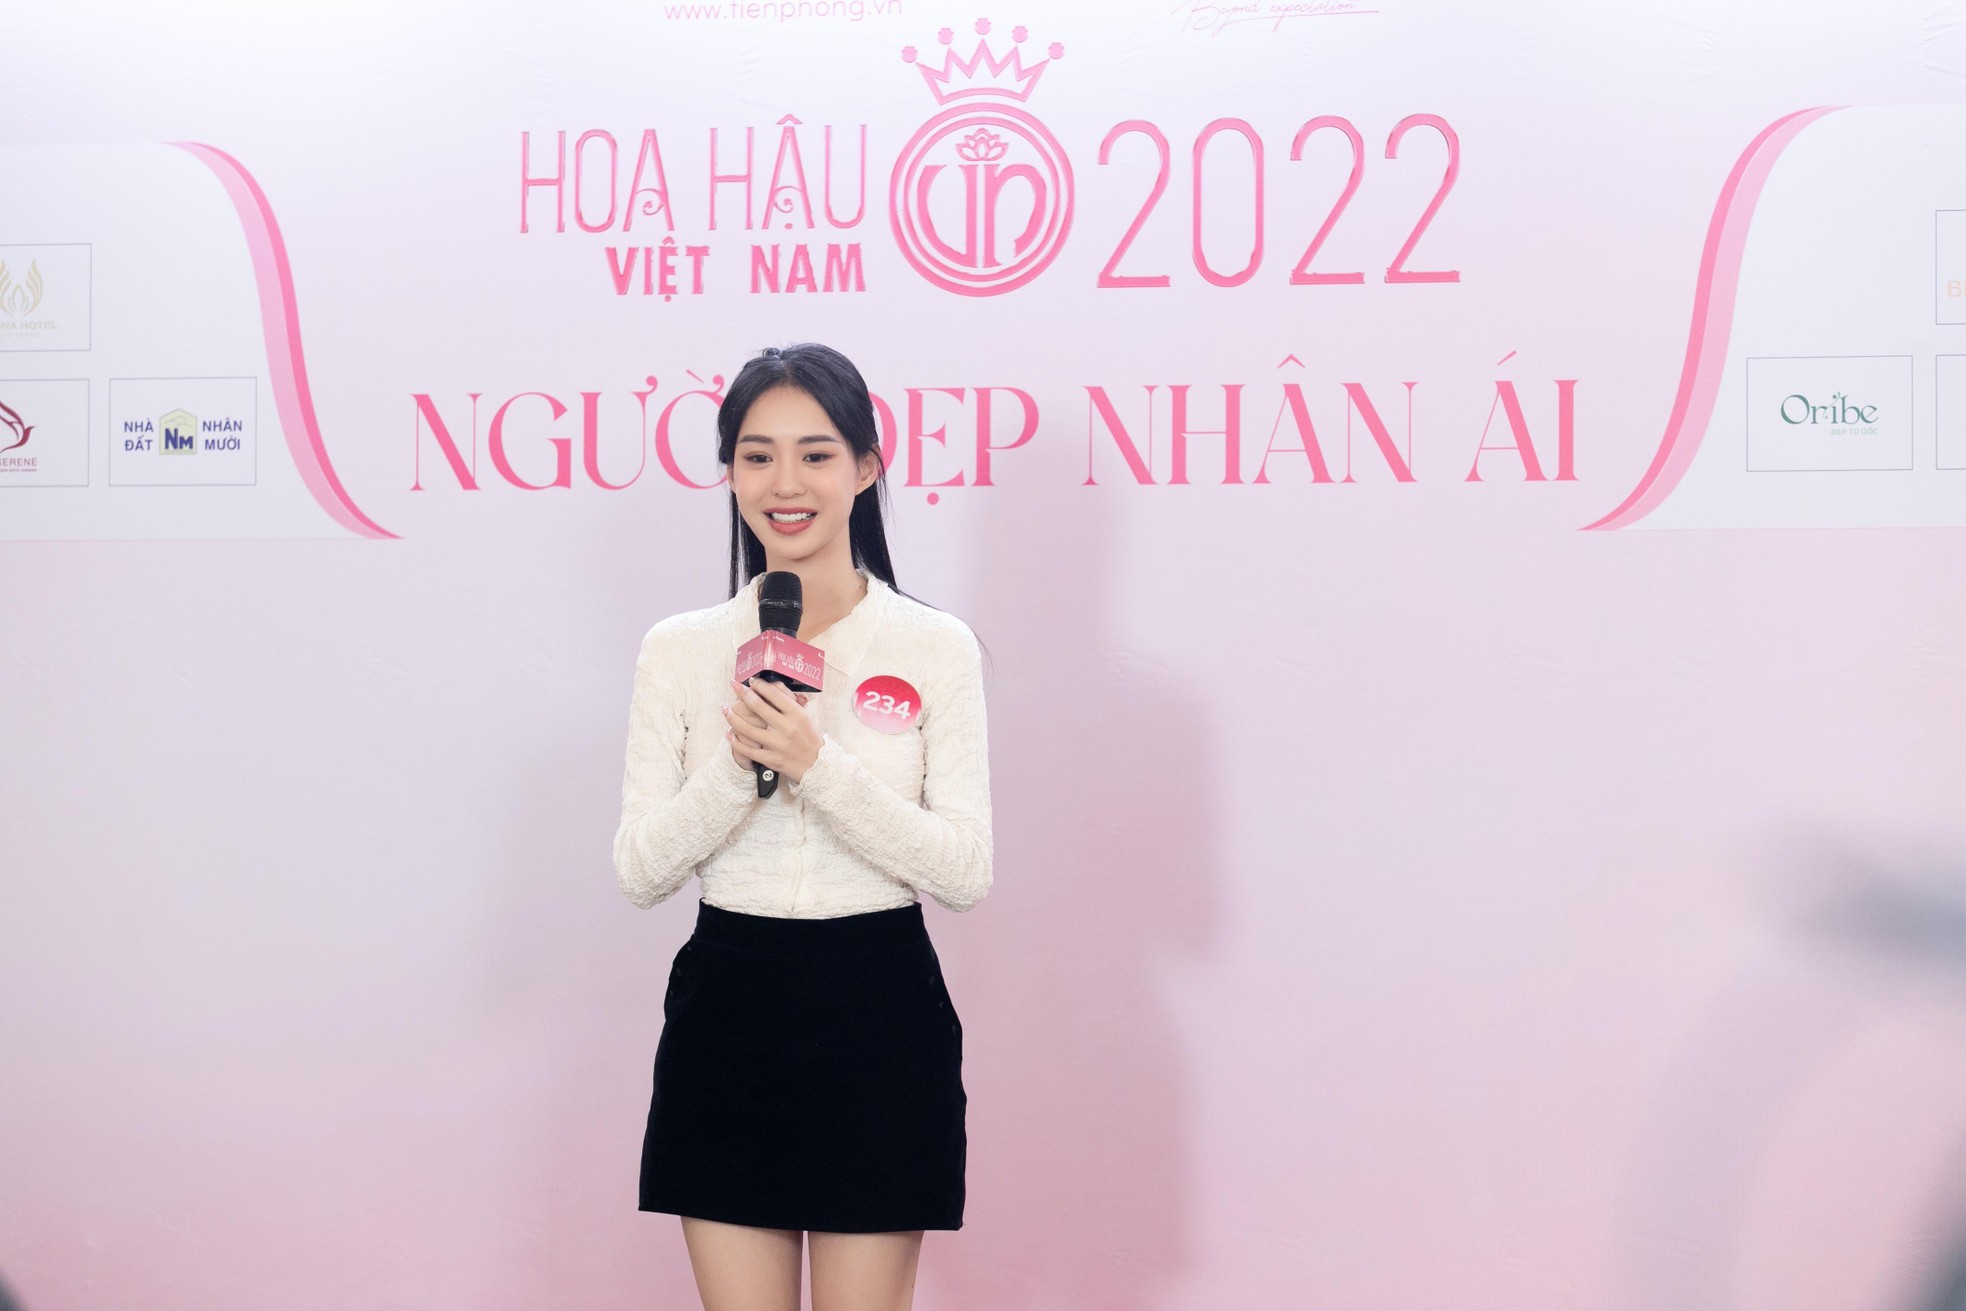 Thí sinh Hoa hậu Việt Nam thuyết trình dự án Nhân ái bằng tiếng Anh - Ảnh 11.